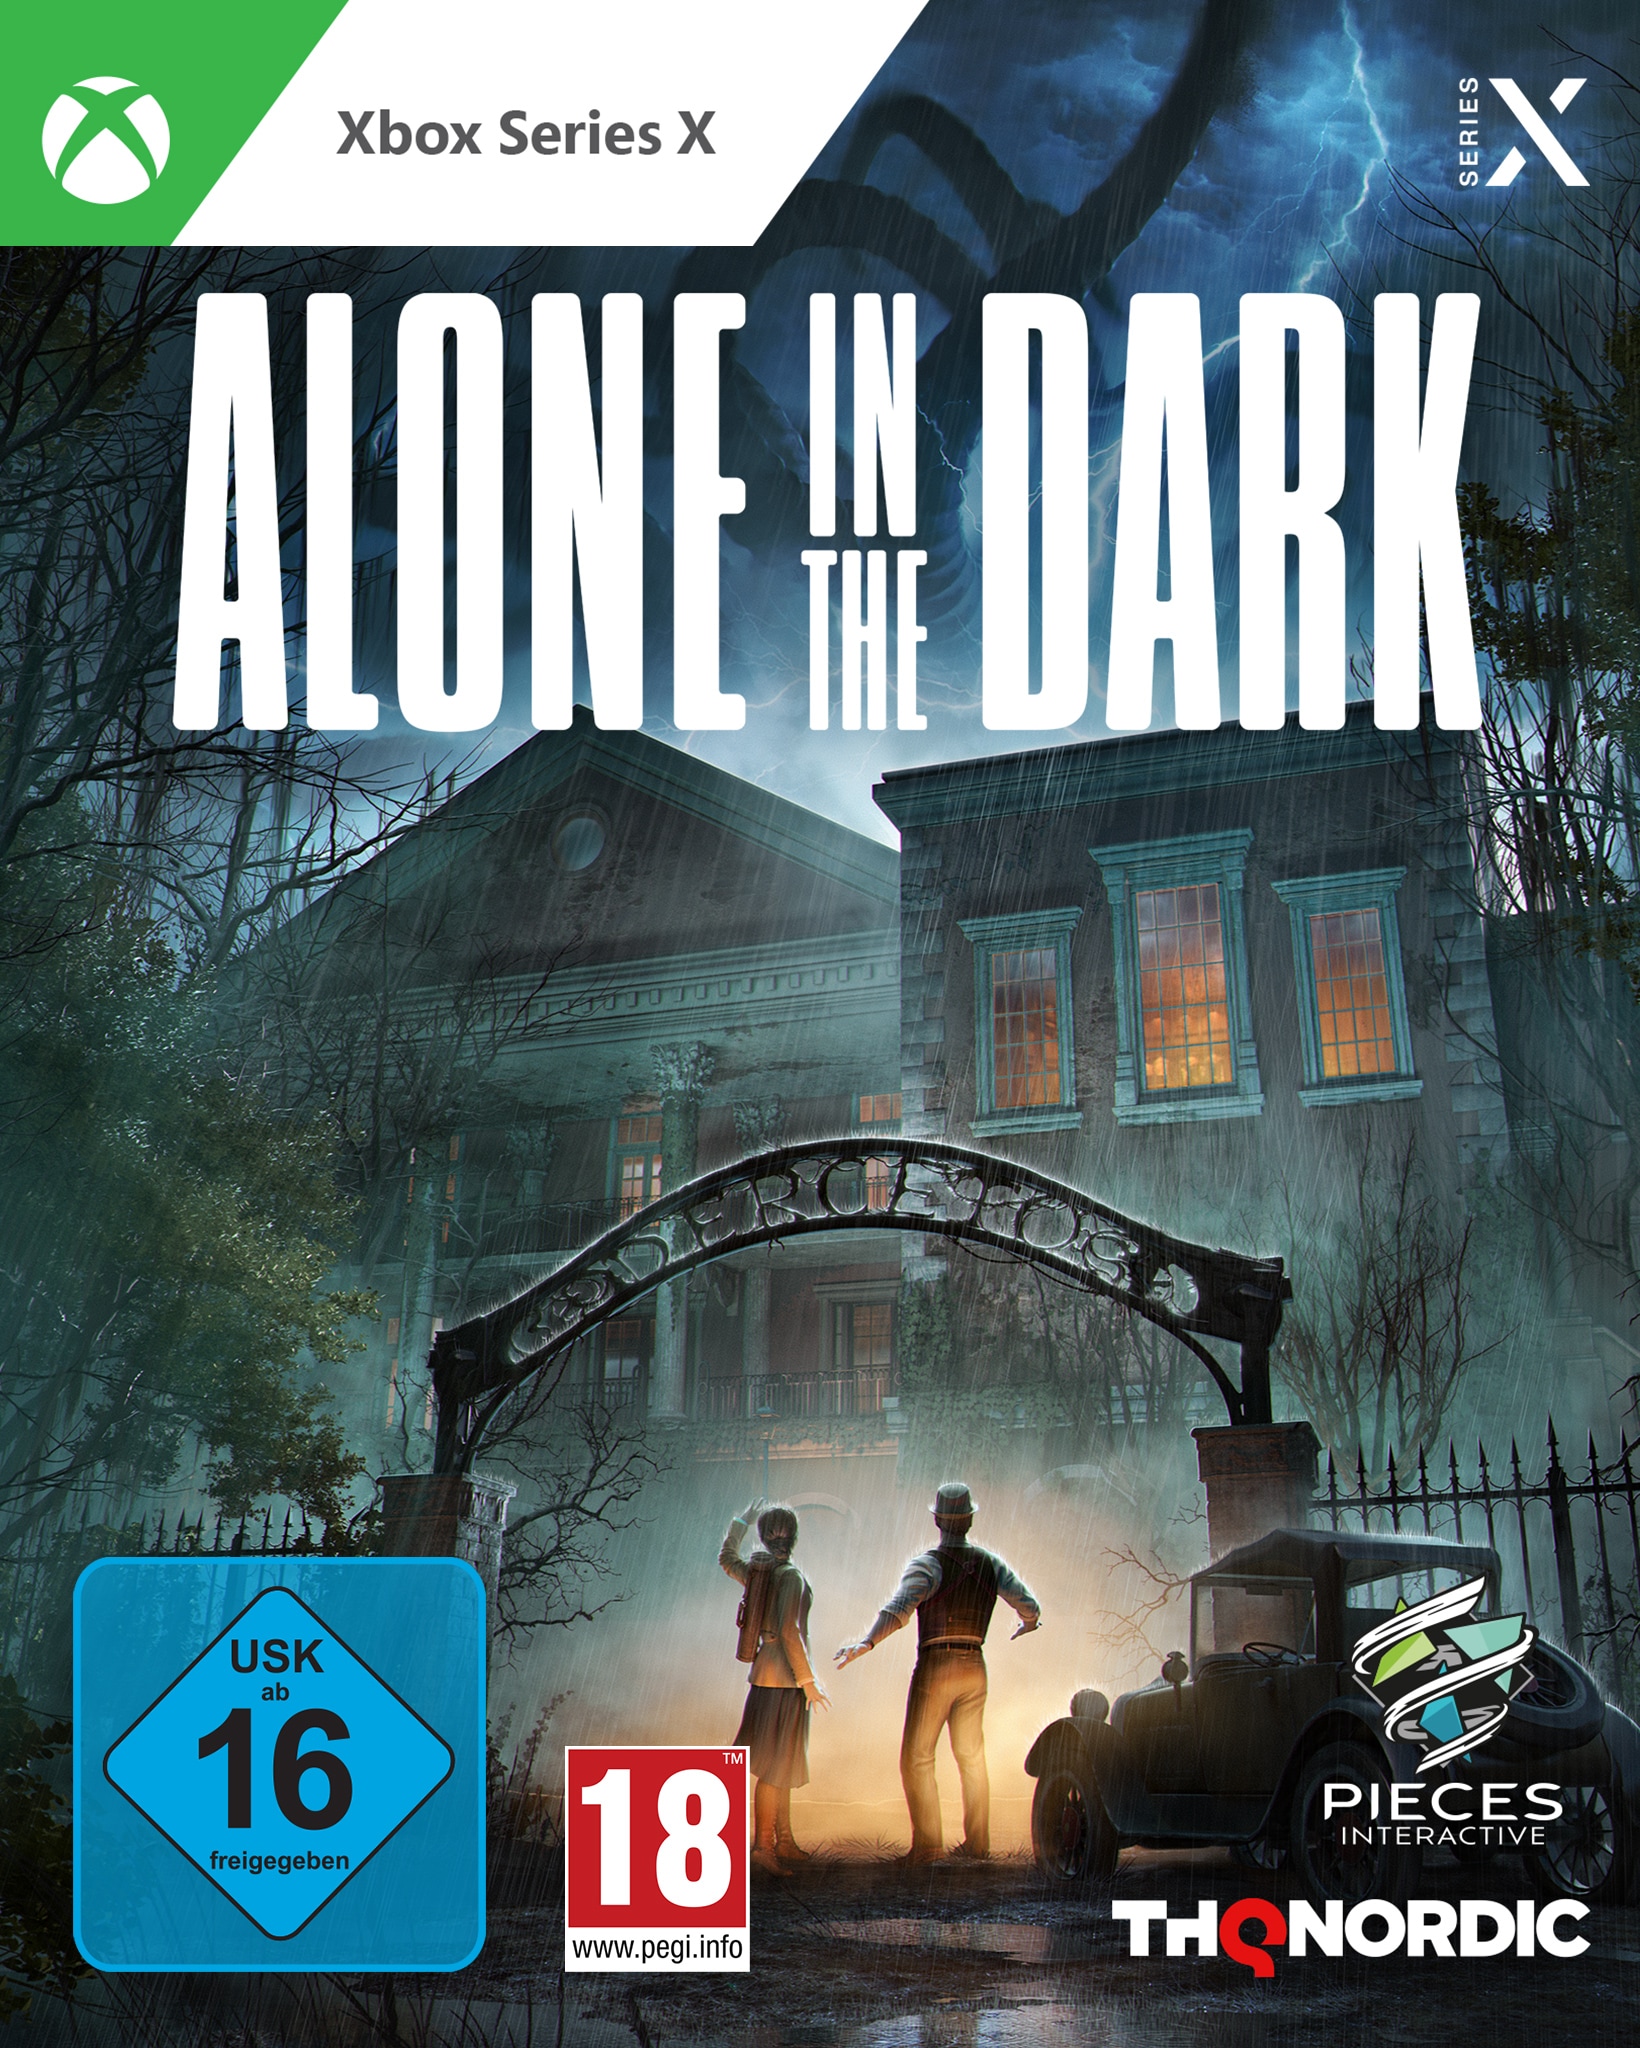 Spielesoftware »Alone in the Dark«, Xbox Series X